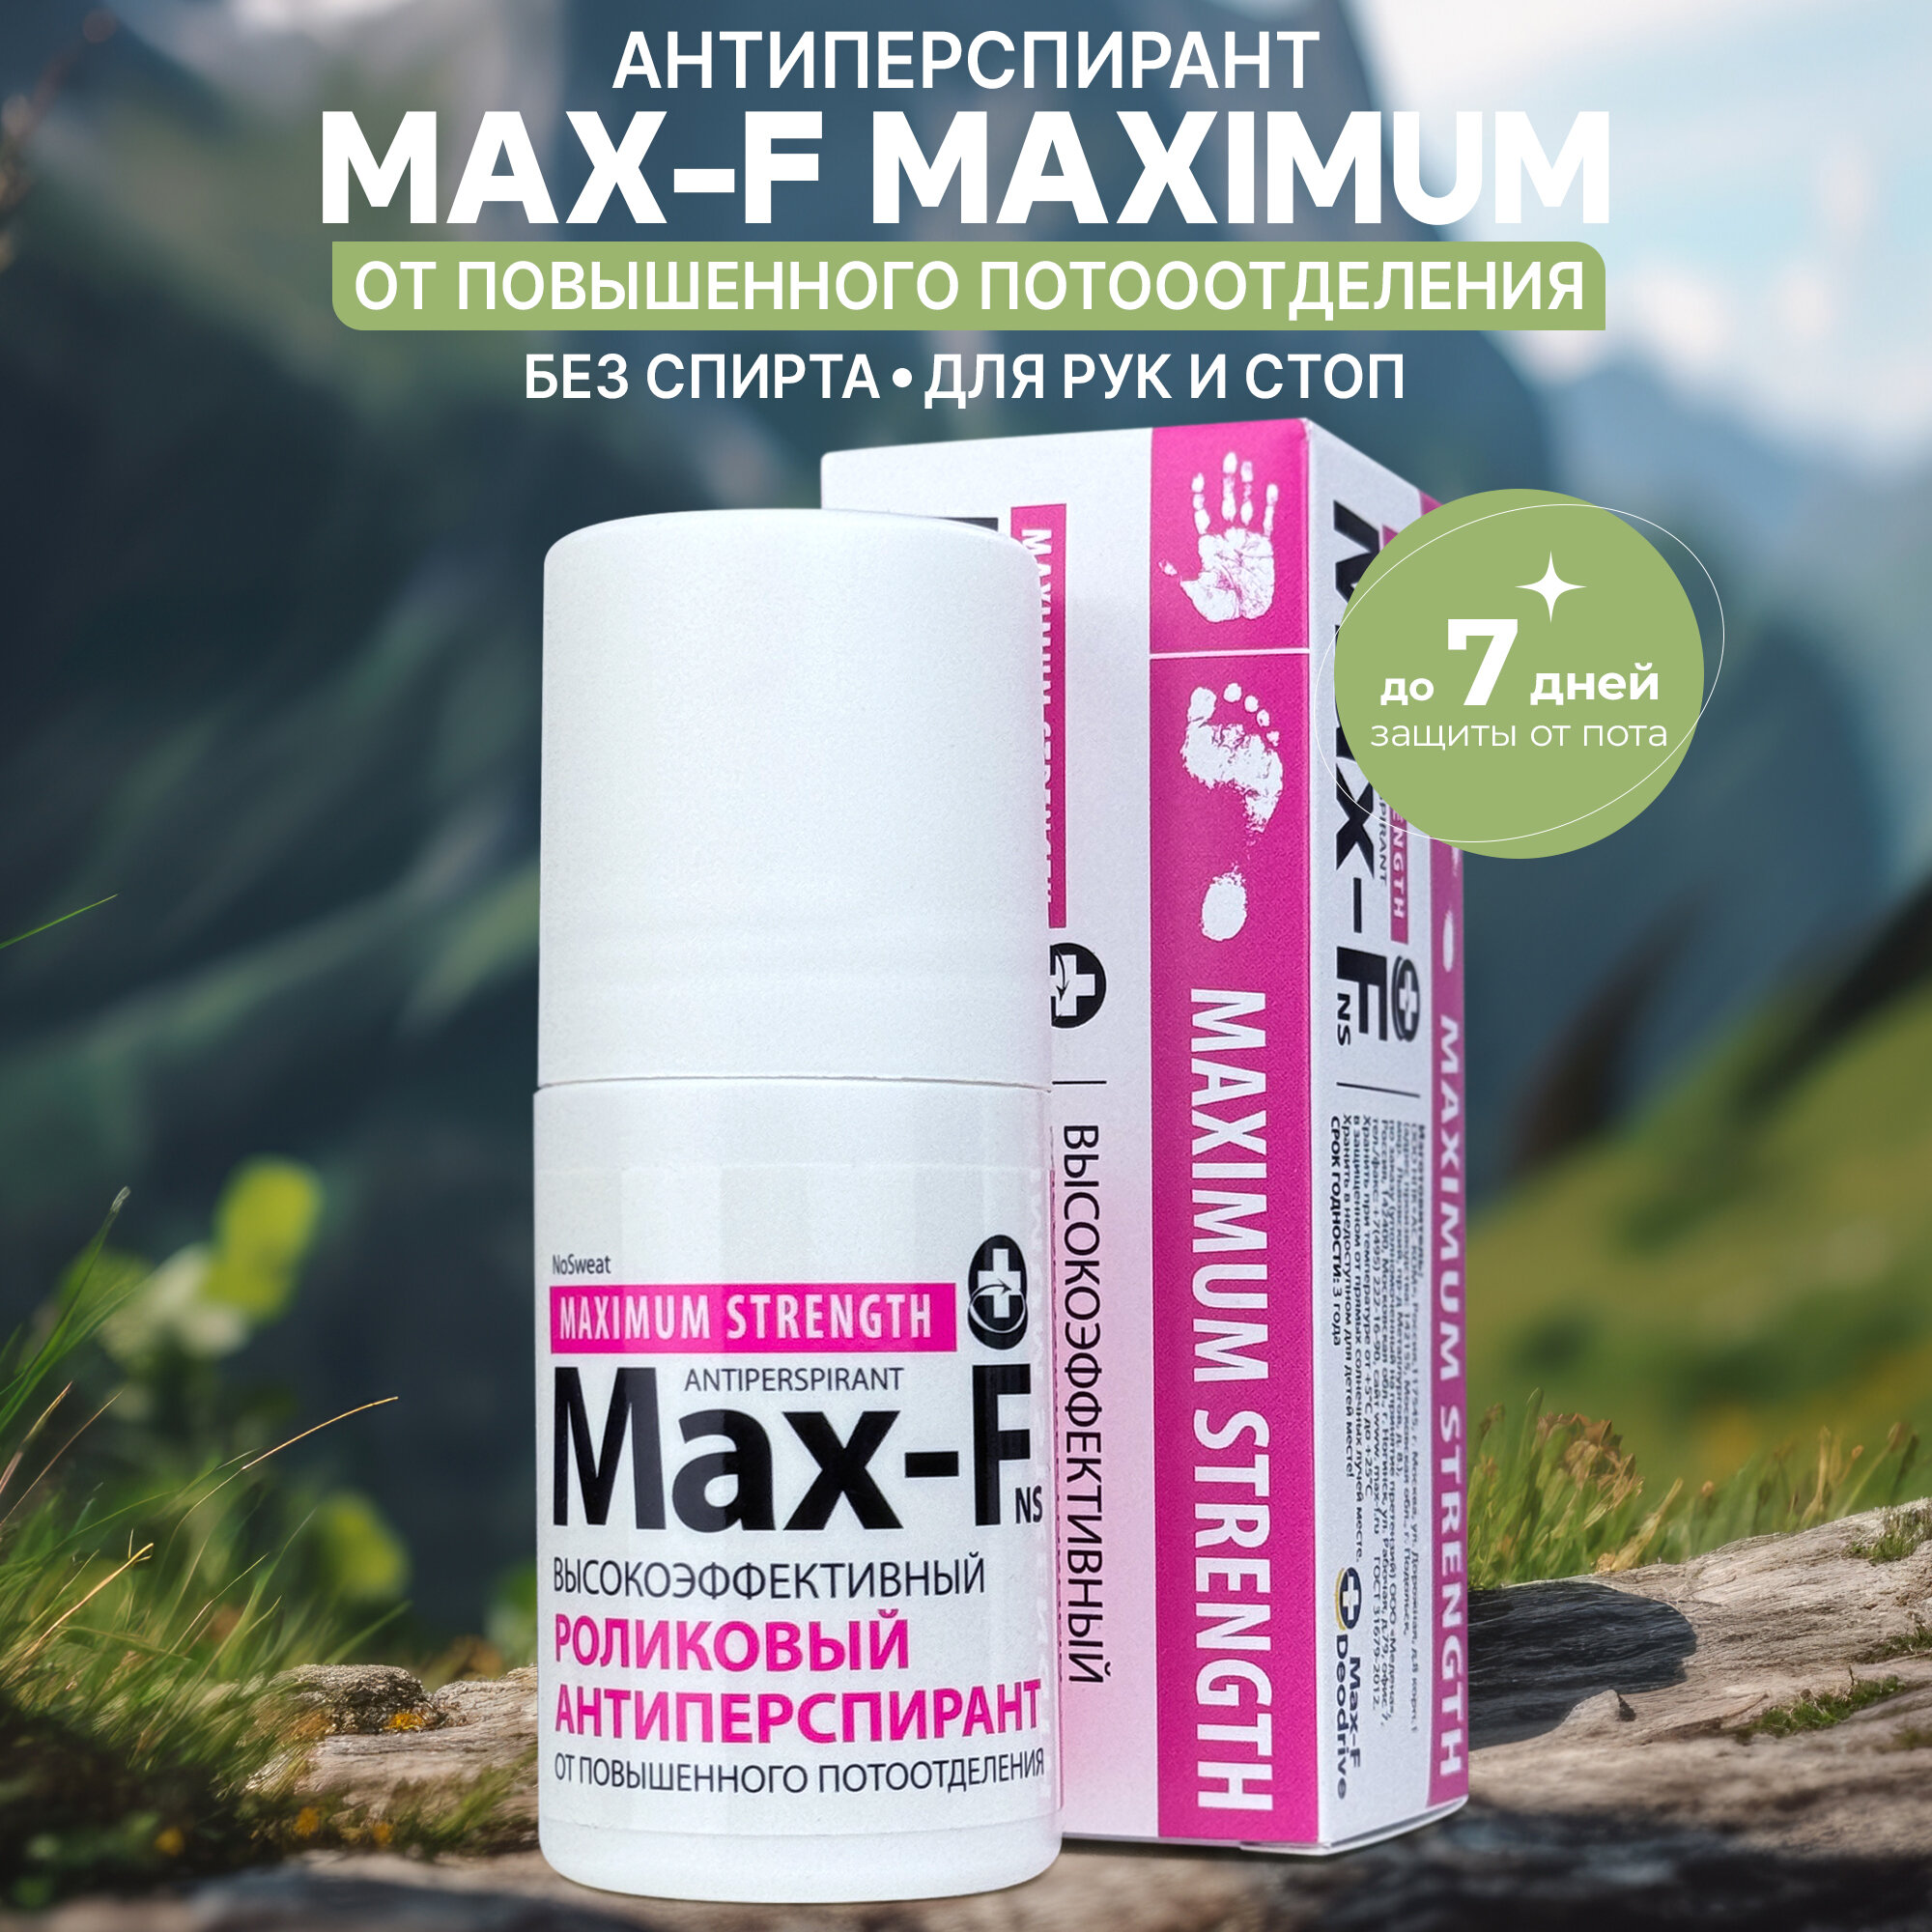  Max-F NoSweat 35% Maximum Strength